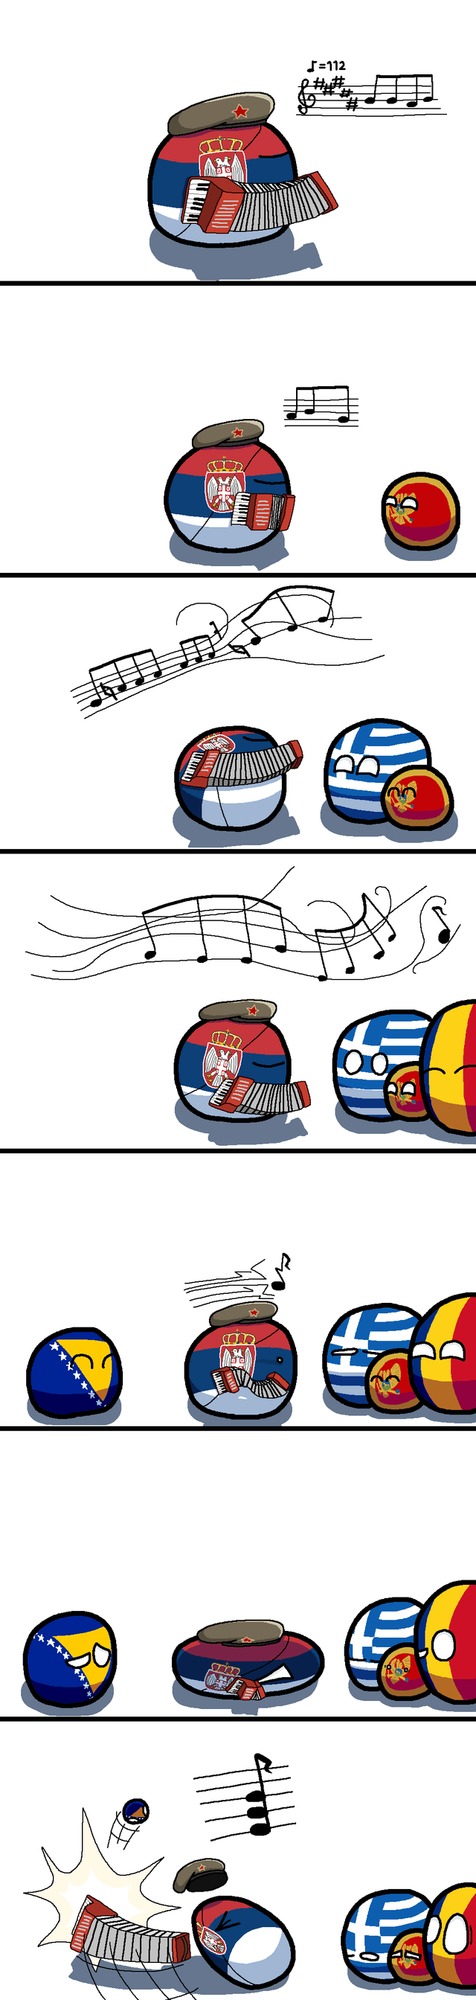 La Serbie :) - meme